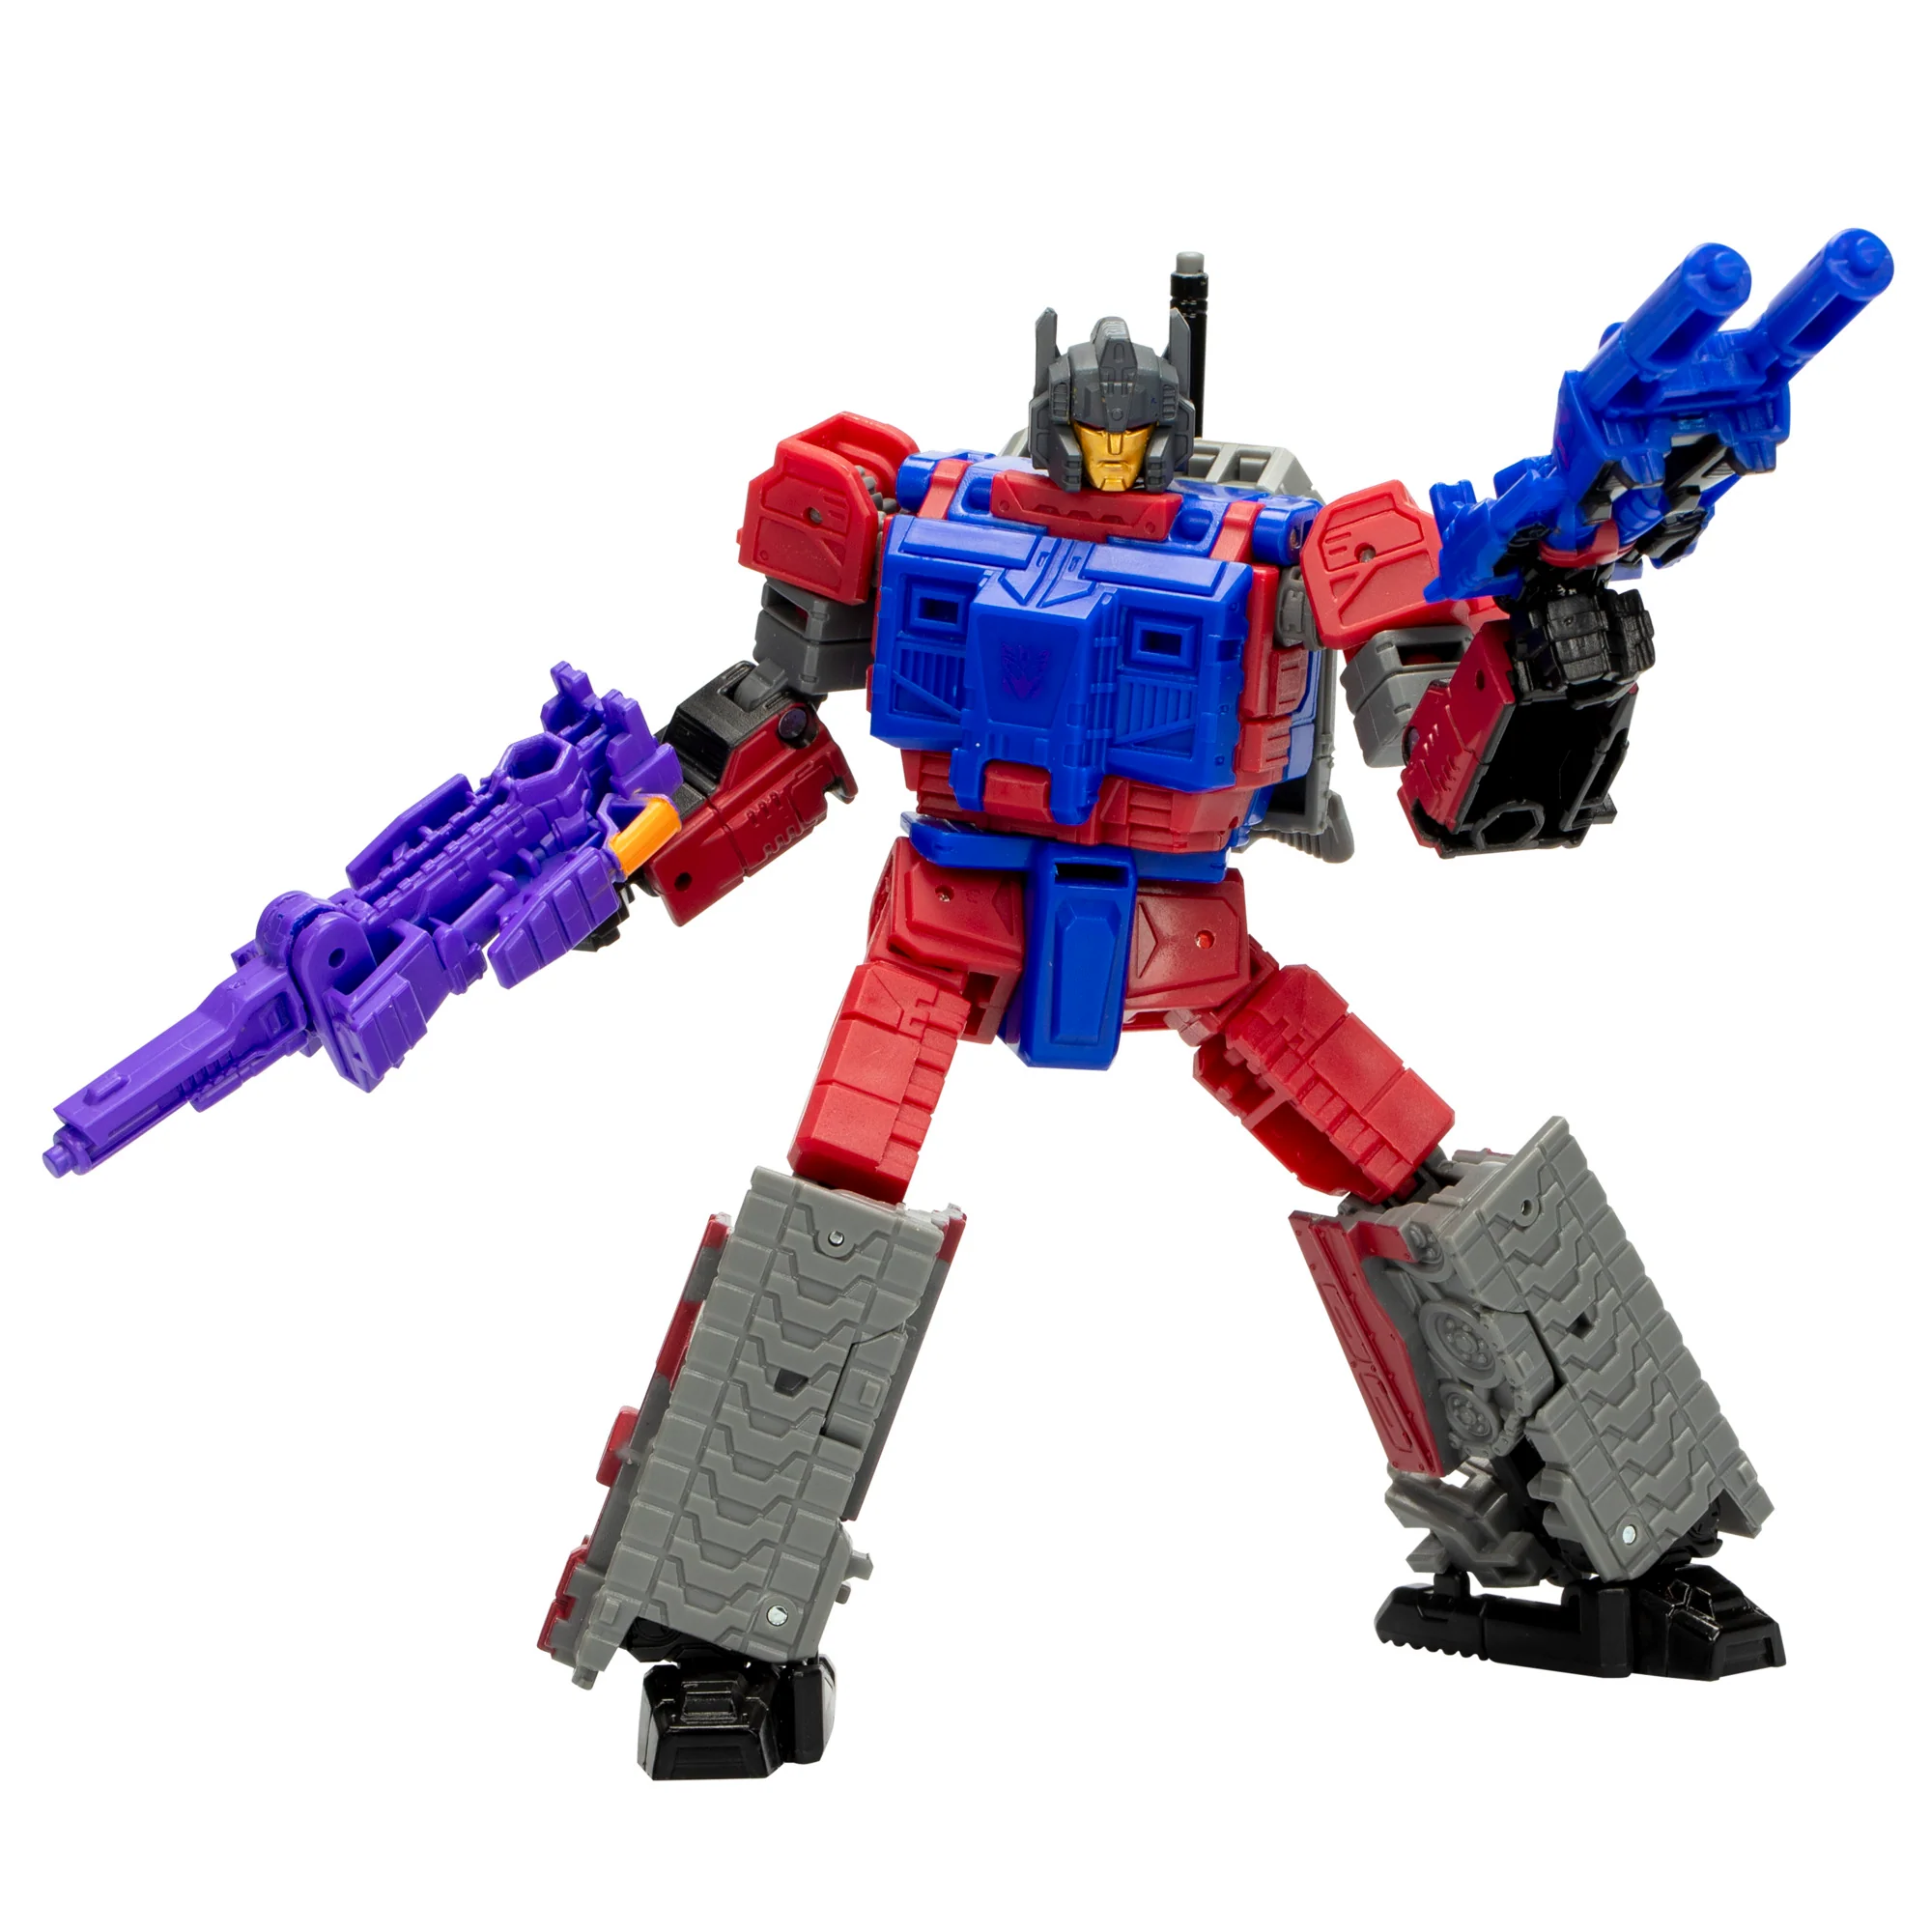 Hasbro Transformers Deluxe Class Quake